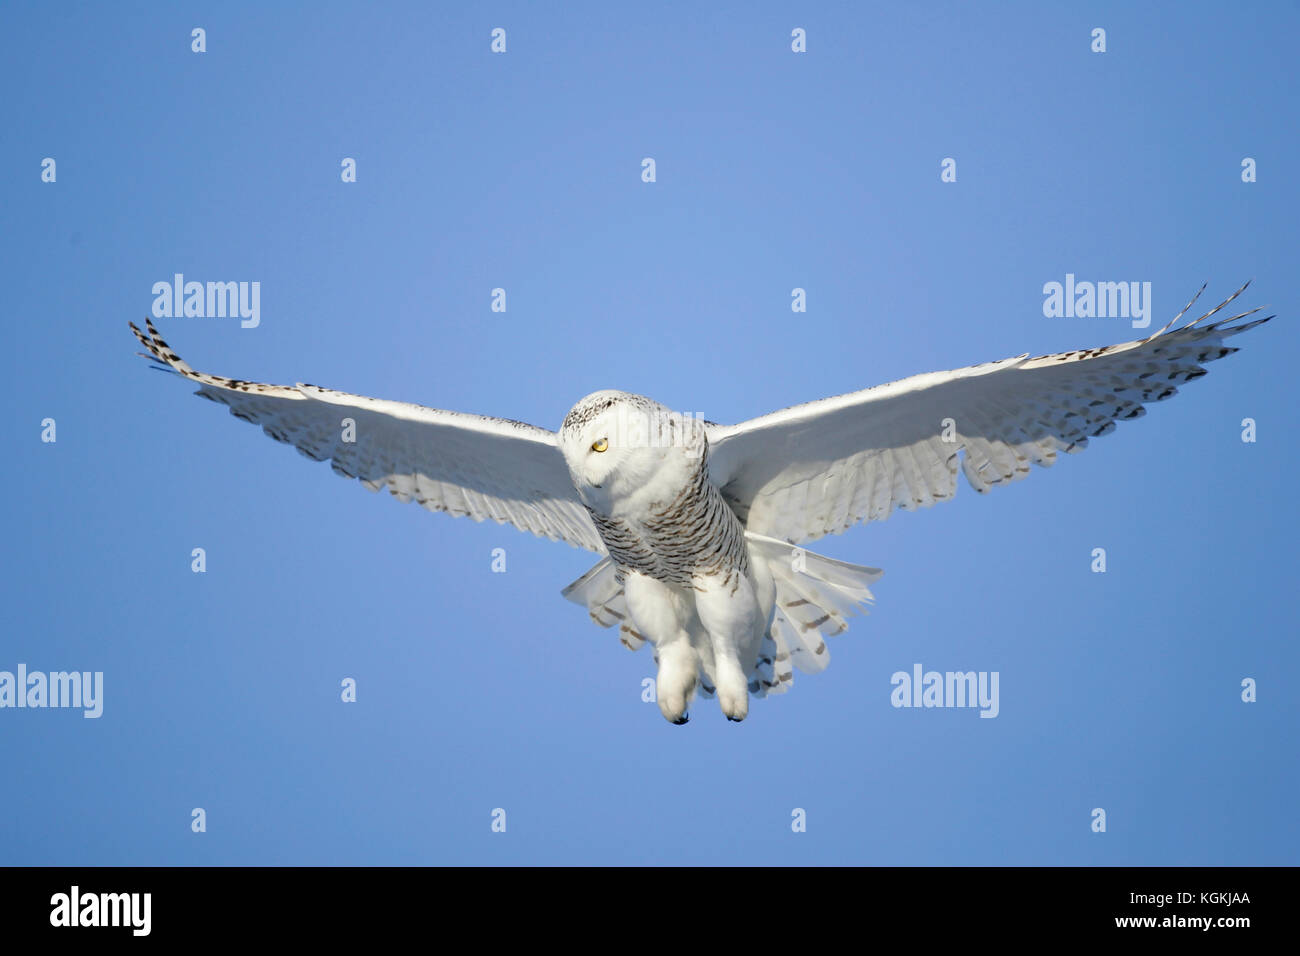 Una imagen de acción de un búho nival volando, flotando sobre su presa contra un cielo azul profundo, garras hacia abajo listo para capturar. Foto de stock